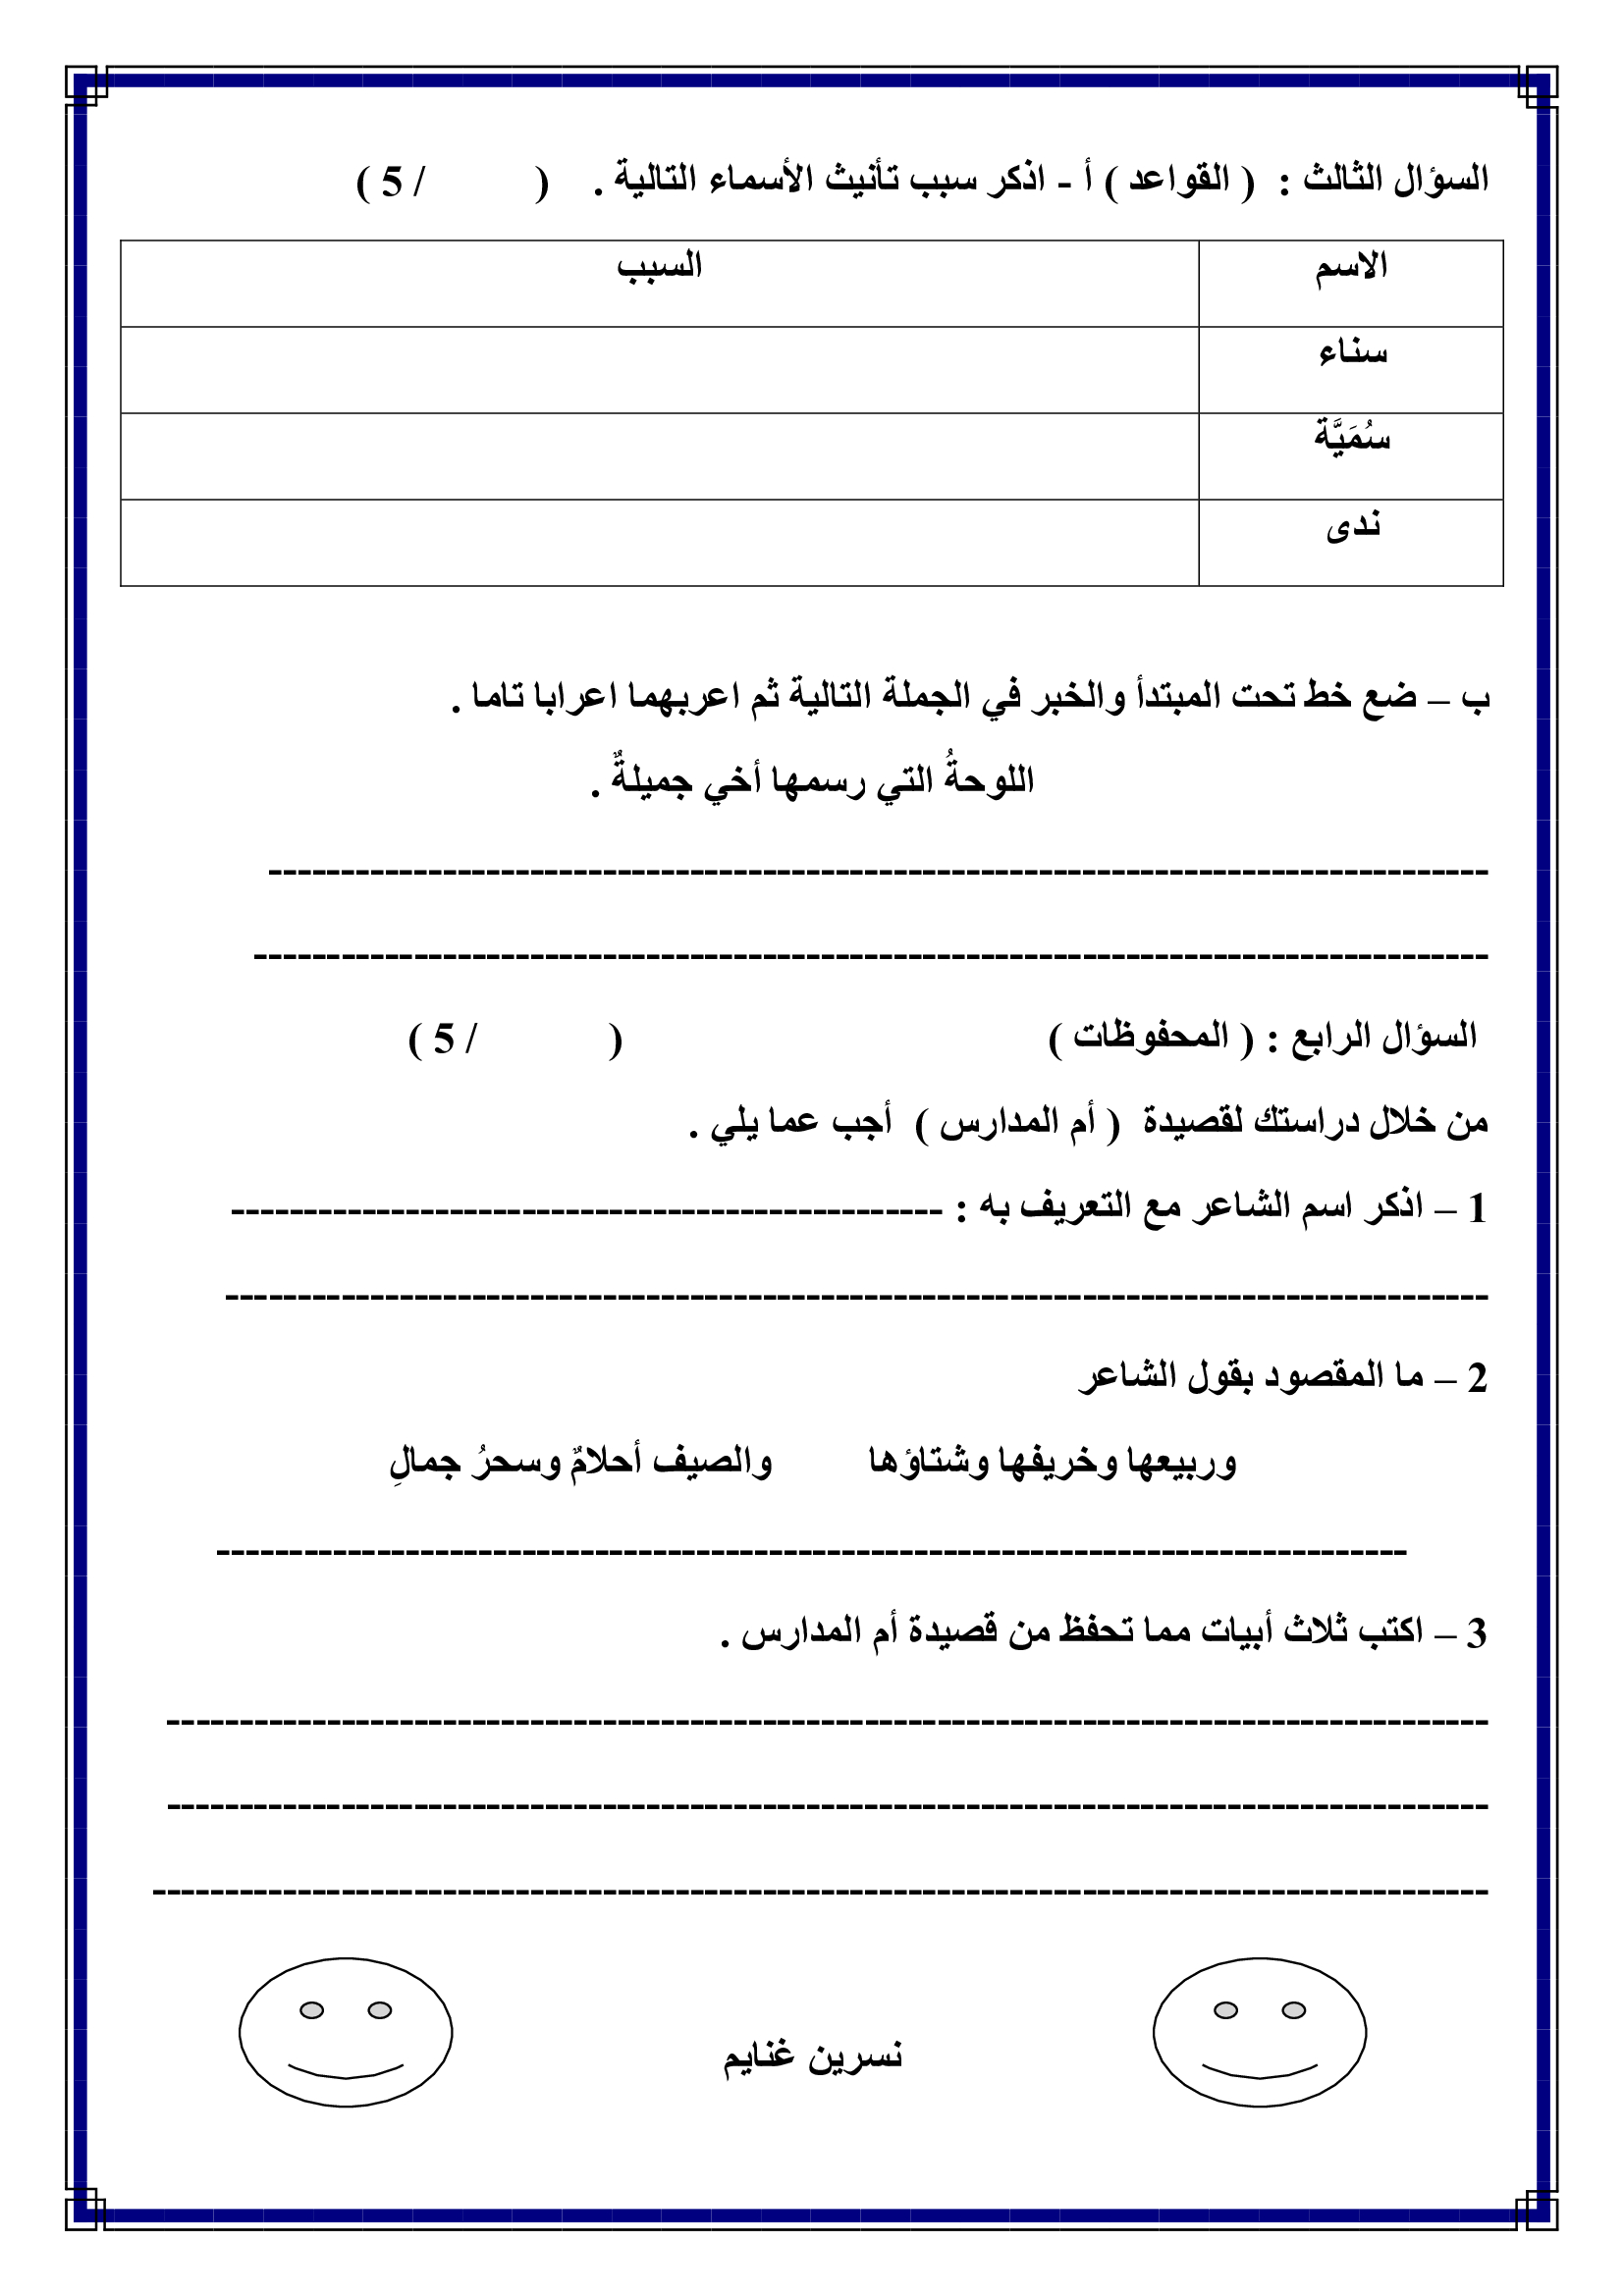 امتحان الشهر الثاني لمادة اللغة العربية للصف الخامس الفصل الاول 2017